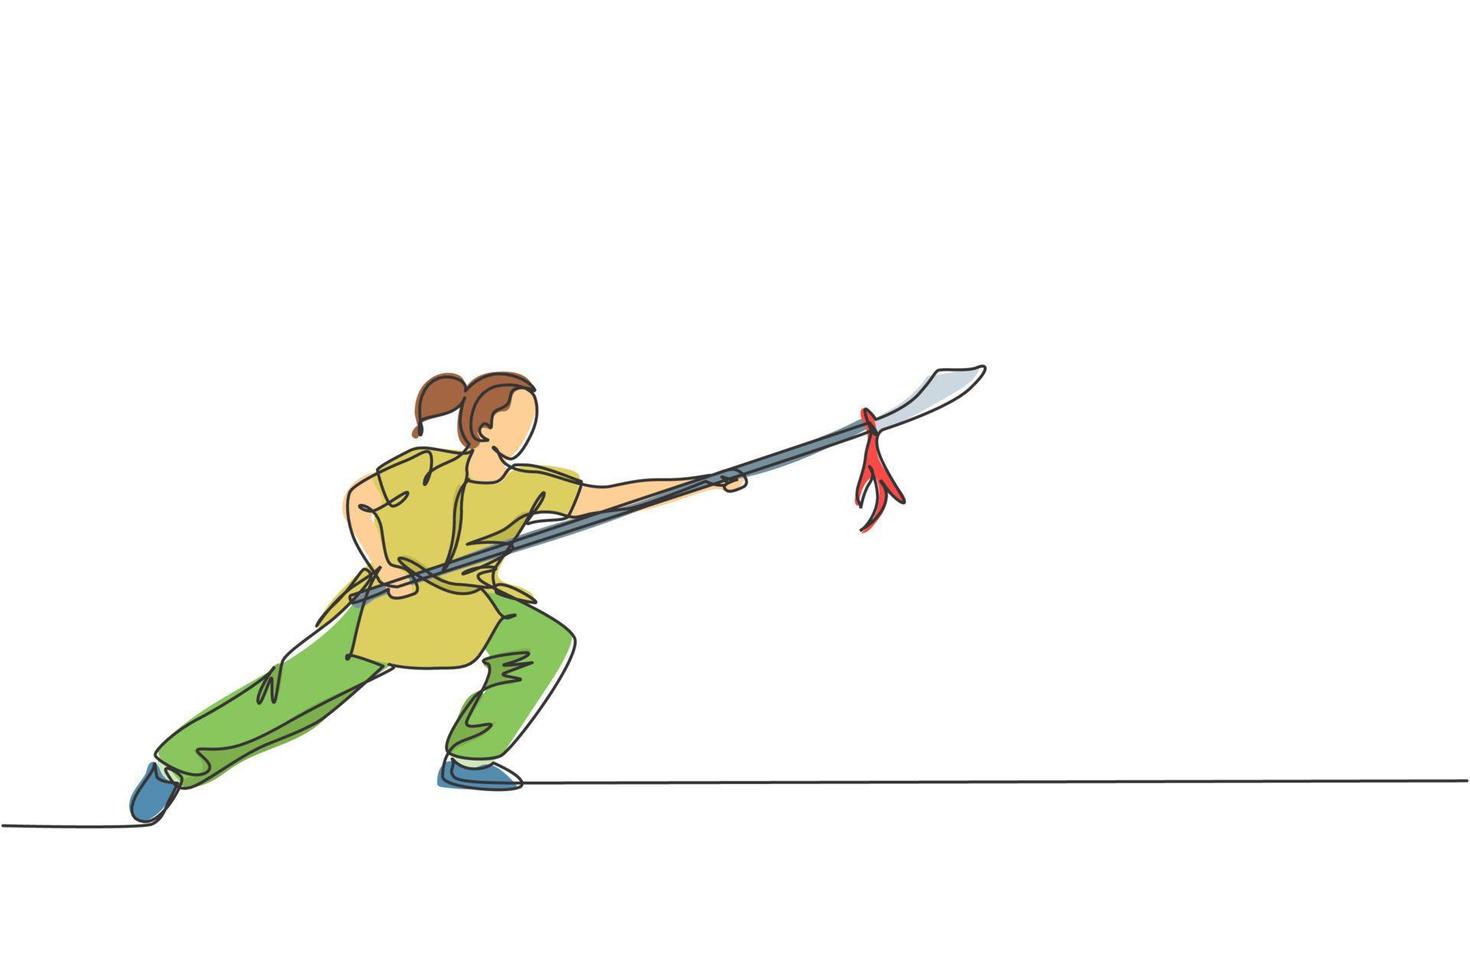 een doorlopende lijntekening jonge wushu-meestervrouw, kungfu-krijger in kimono met speer op training. vechtsport sport wedstrijd concept. dynamische enkele lijn tekenen ontwerp grafische vectorillustratie vector